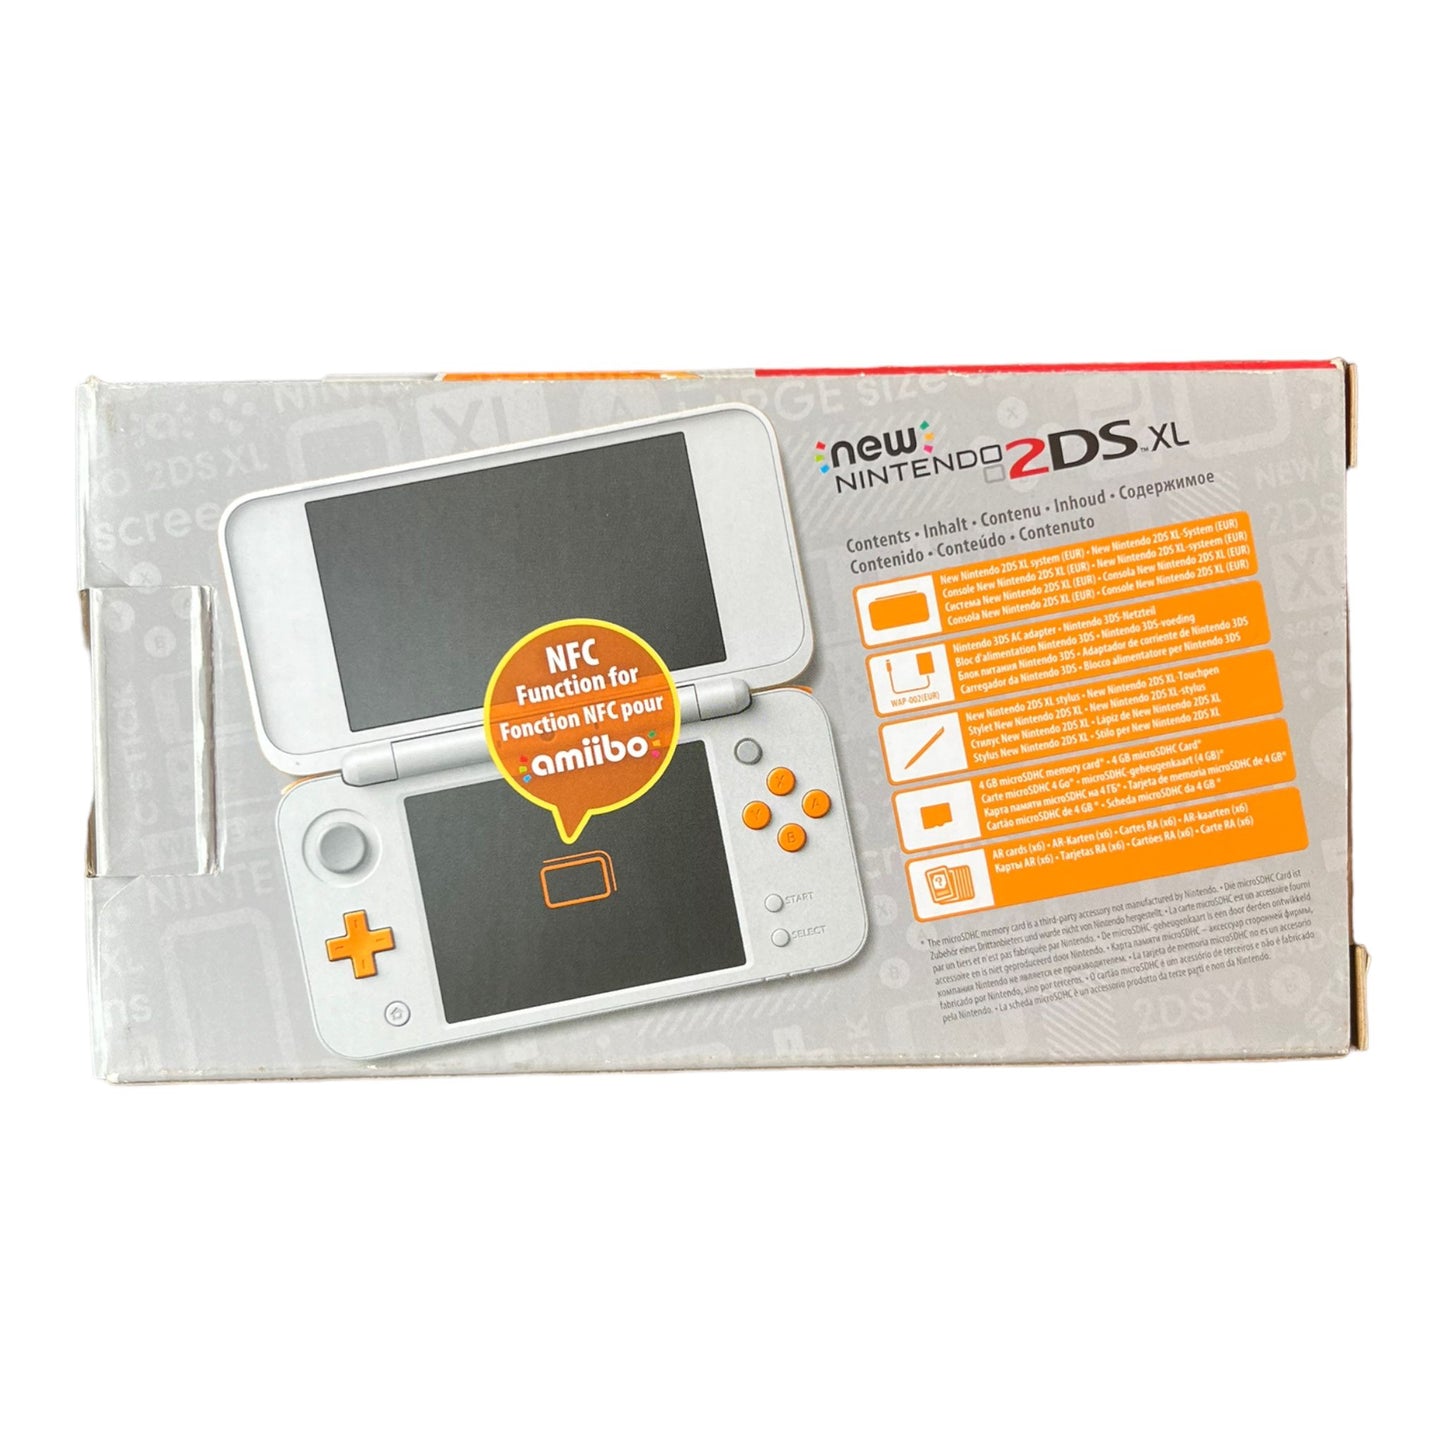 NEW Nintendo 2DS XL - COMPLEET